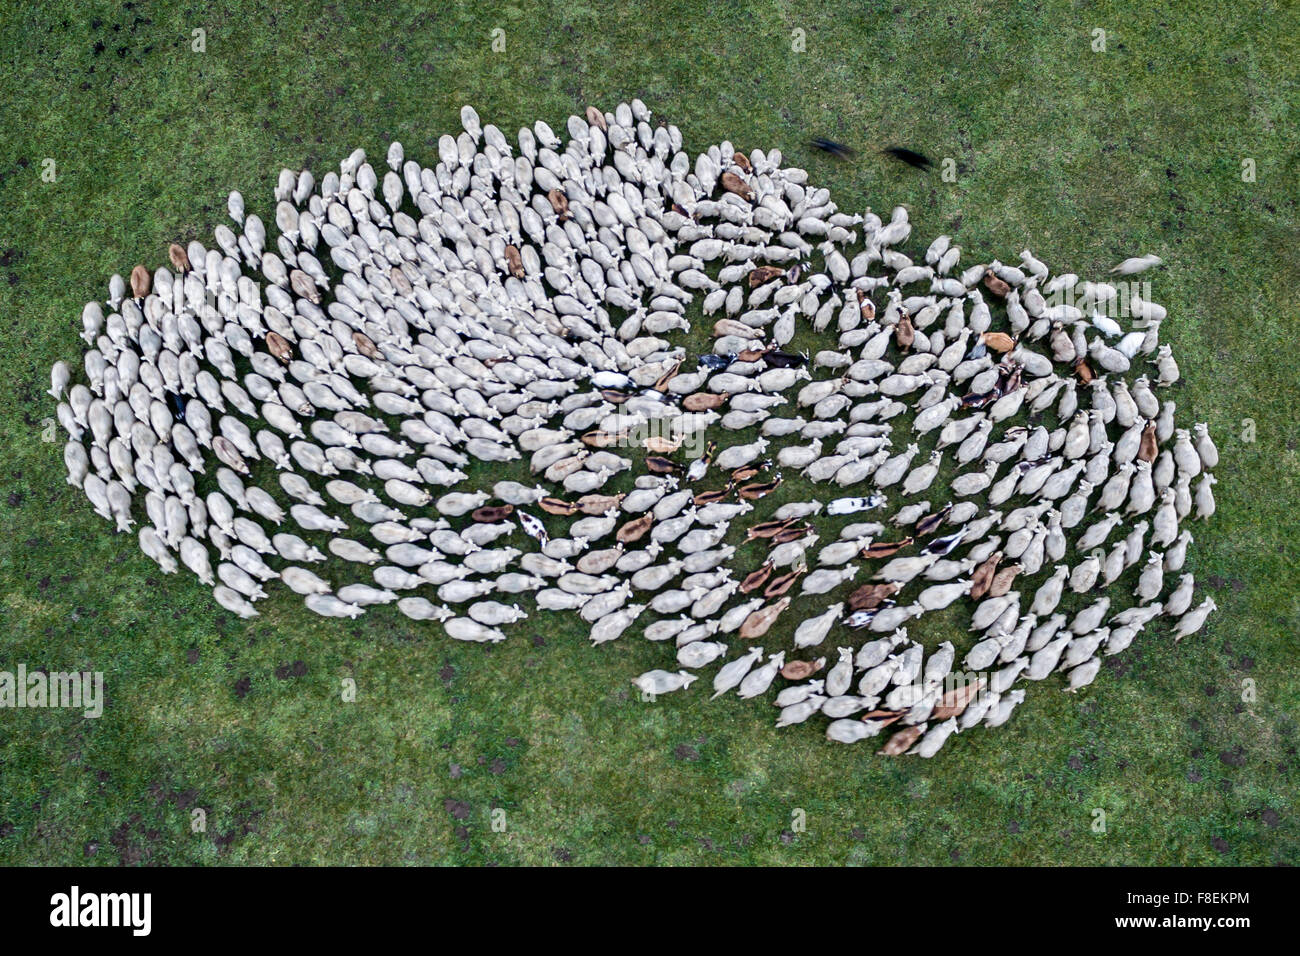 Weng, Alemania. 08 dic, 2015. Las ovejas pastan en un campo cerca de Weng, Alemania, 08 de diciembre de 2015. Foto tomada con un zumbido. Foto: ARMIN WEIGEL/dpa/Alamy Live News Foto de stock